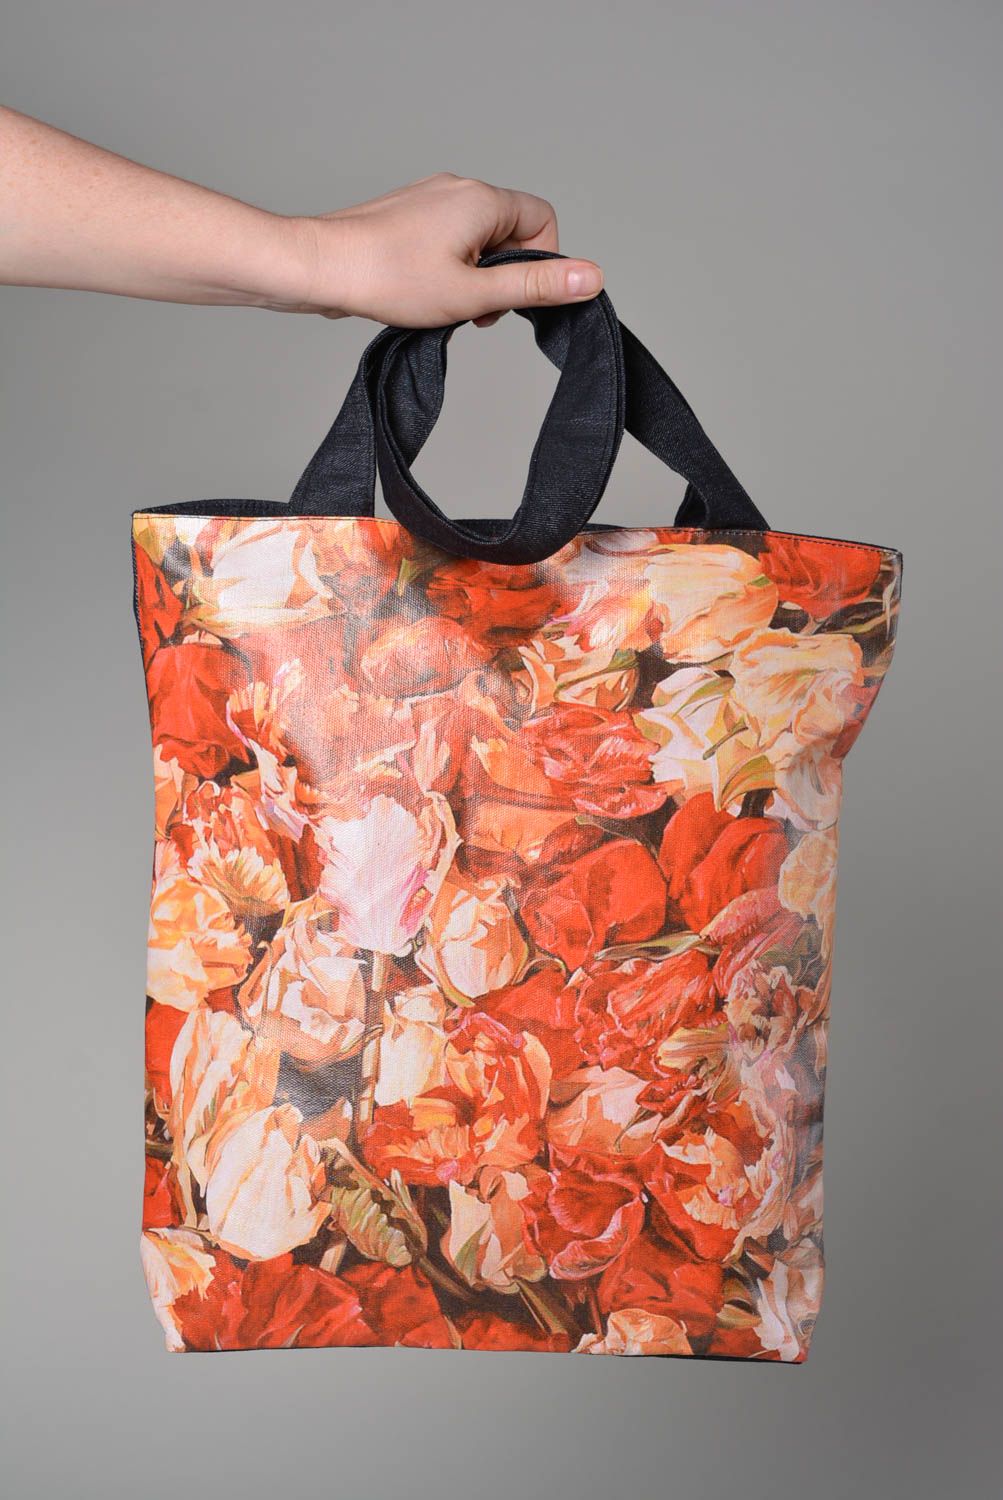 Джинсовая сумка ручной работы сумка для женщины сумка с рисунком красивая сумка фото 3